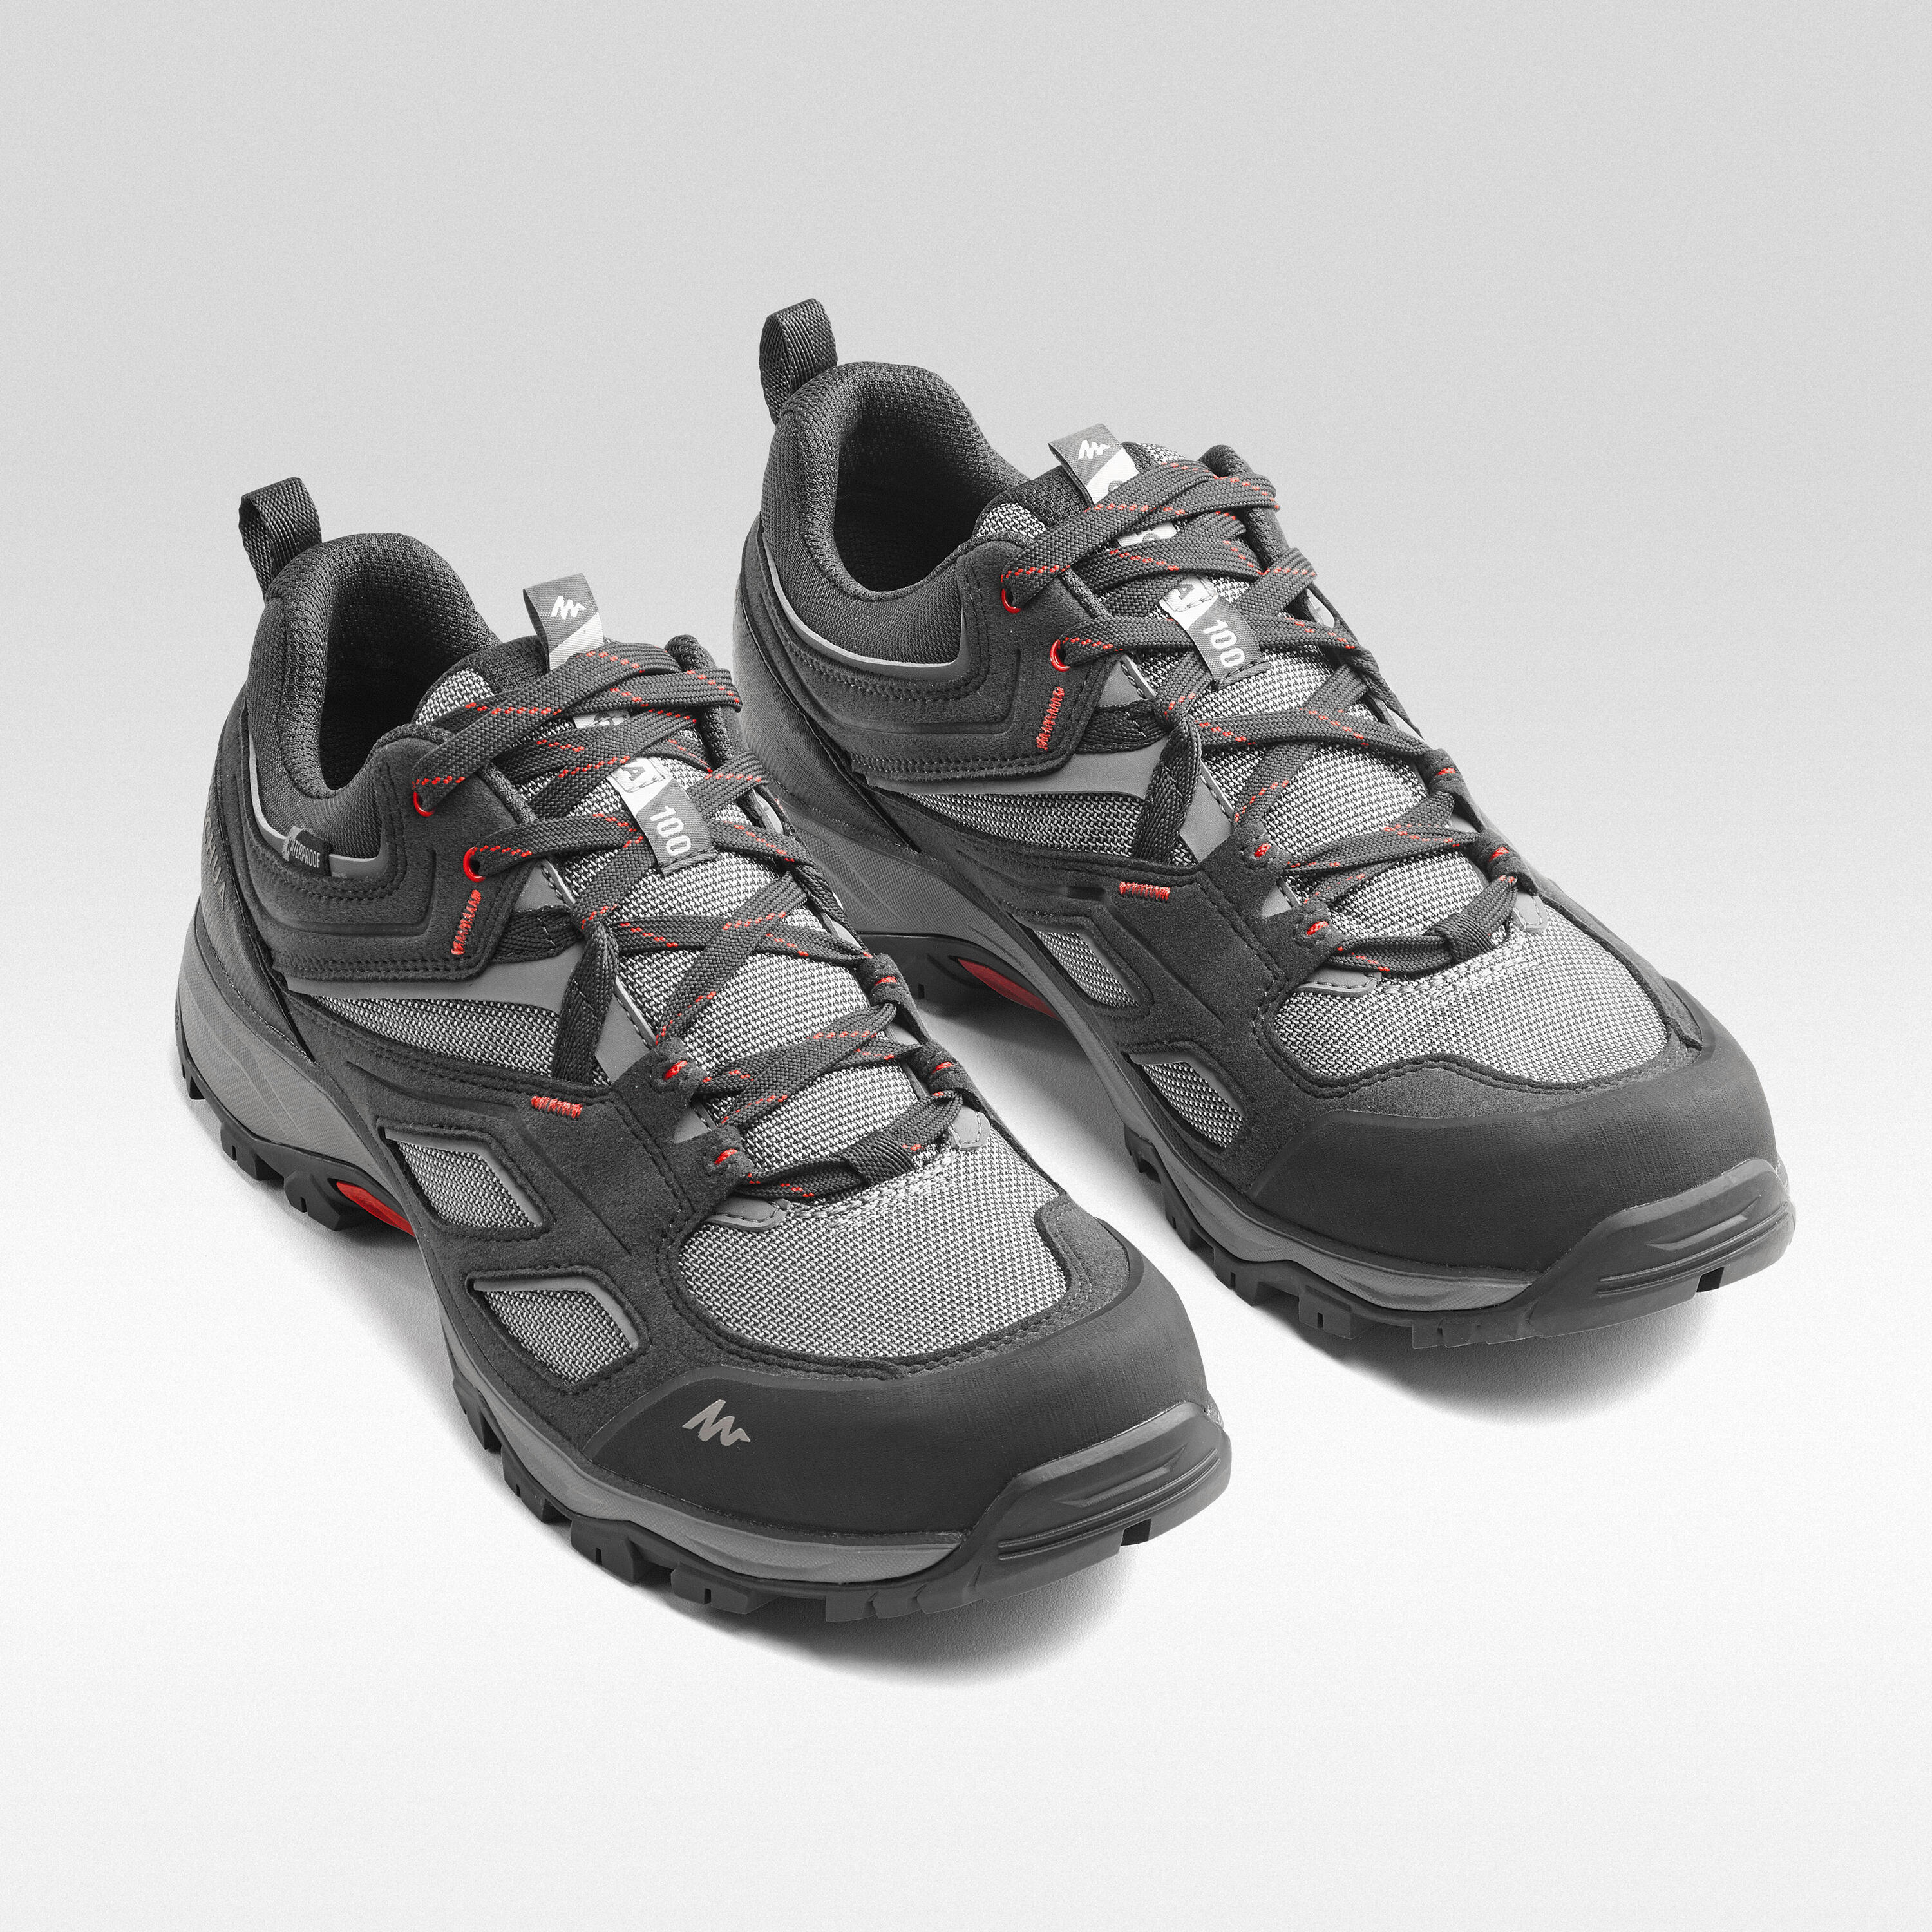 Men's waterproof mountain hiking shoes - MH100 - Grey 6/8